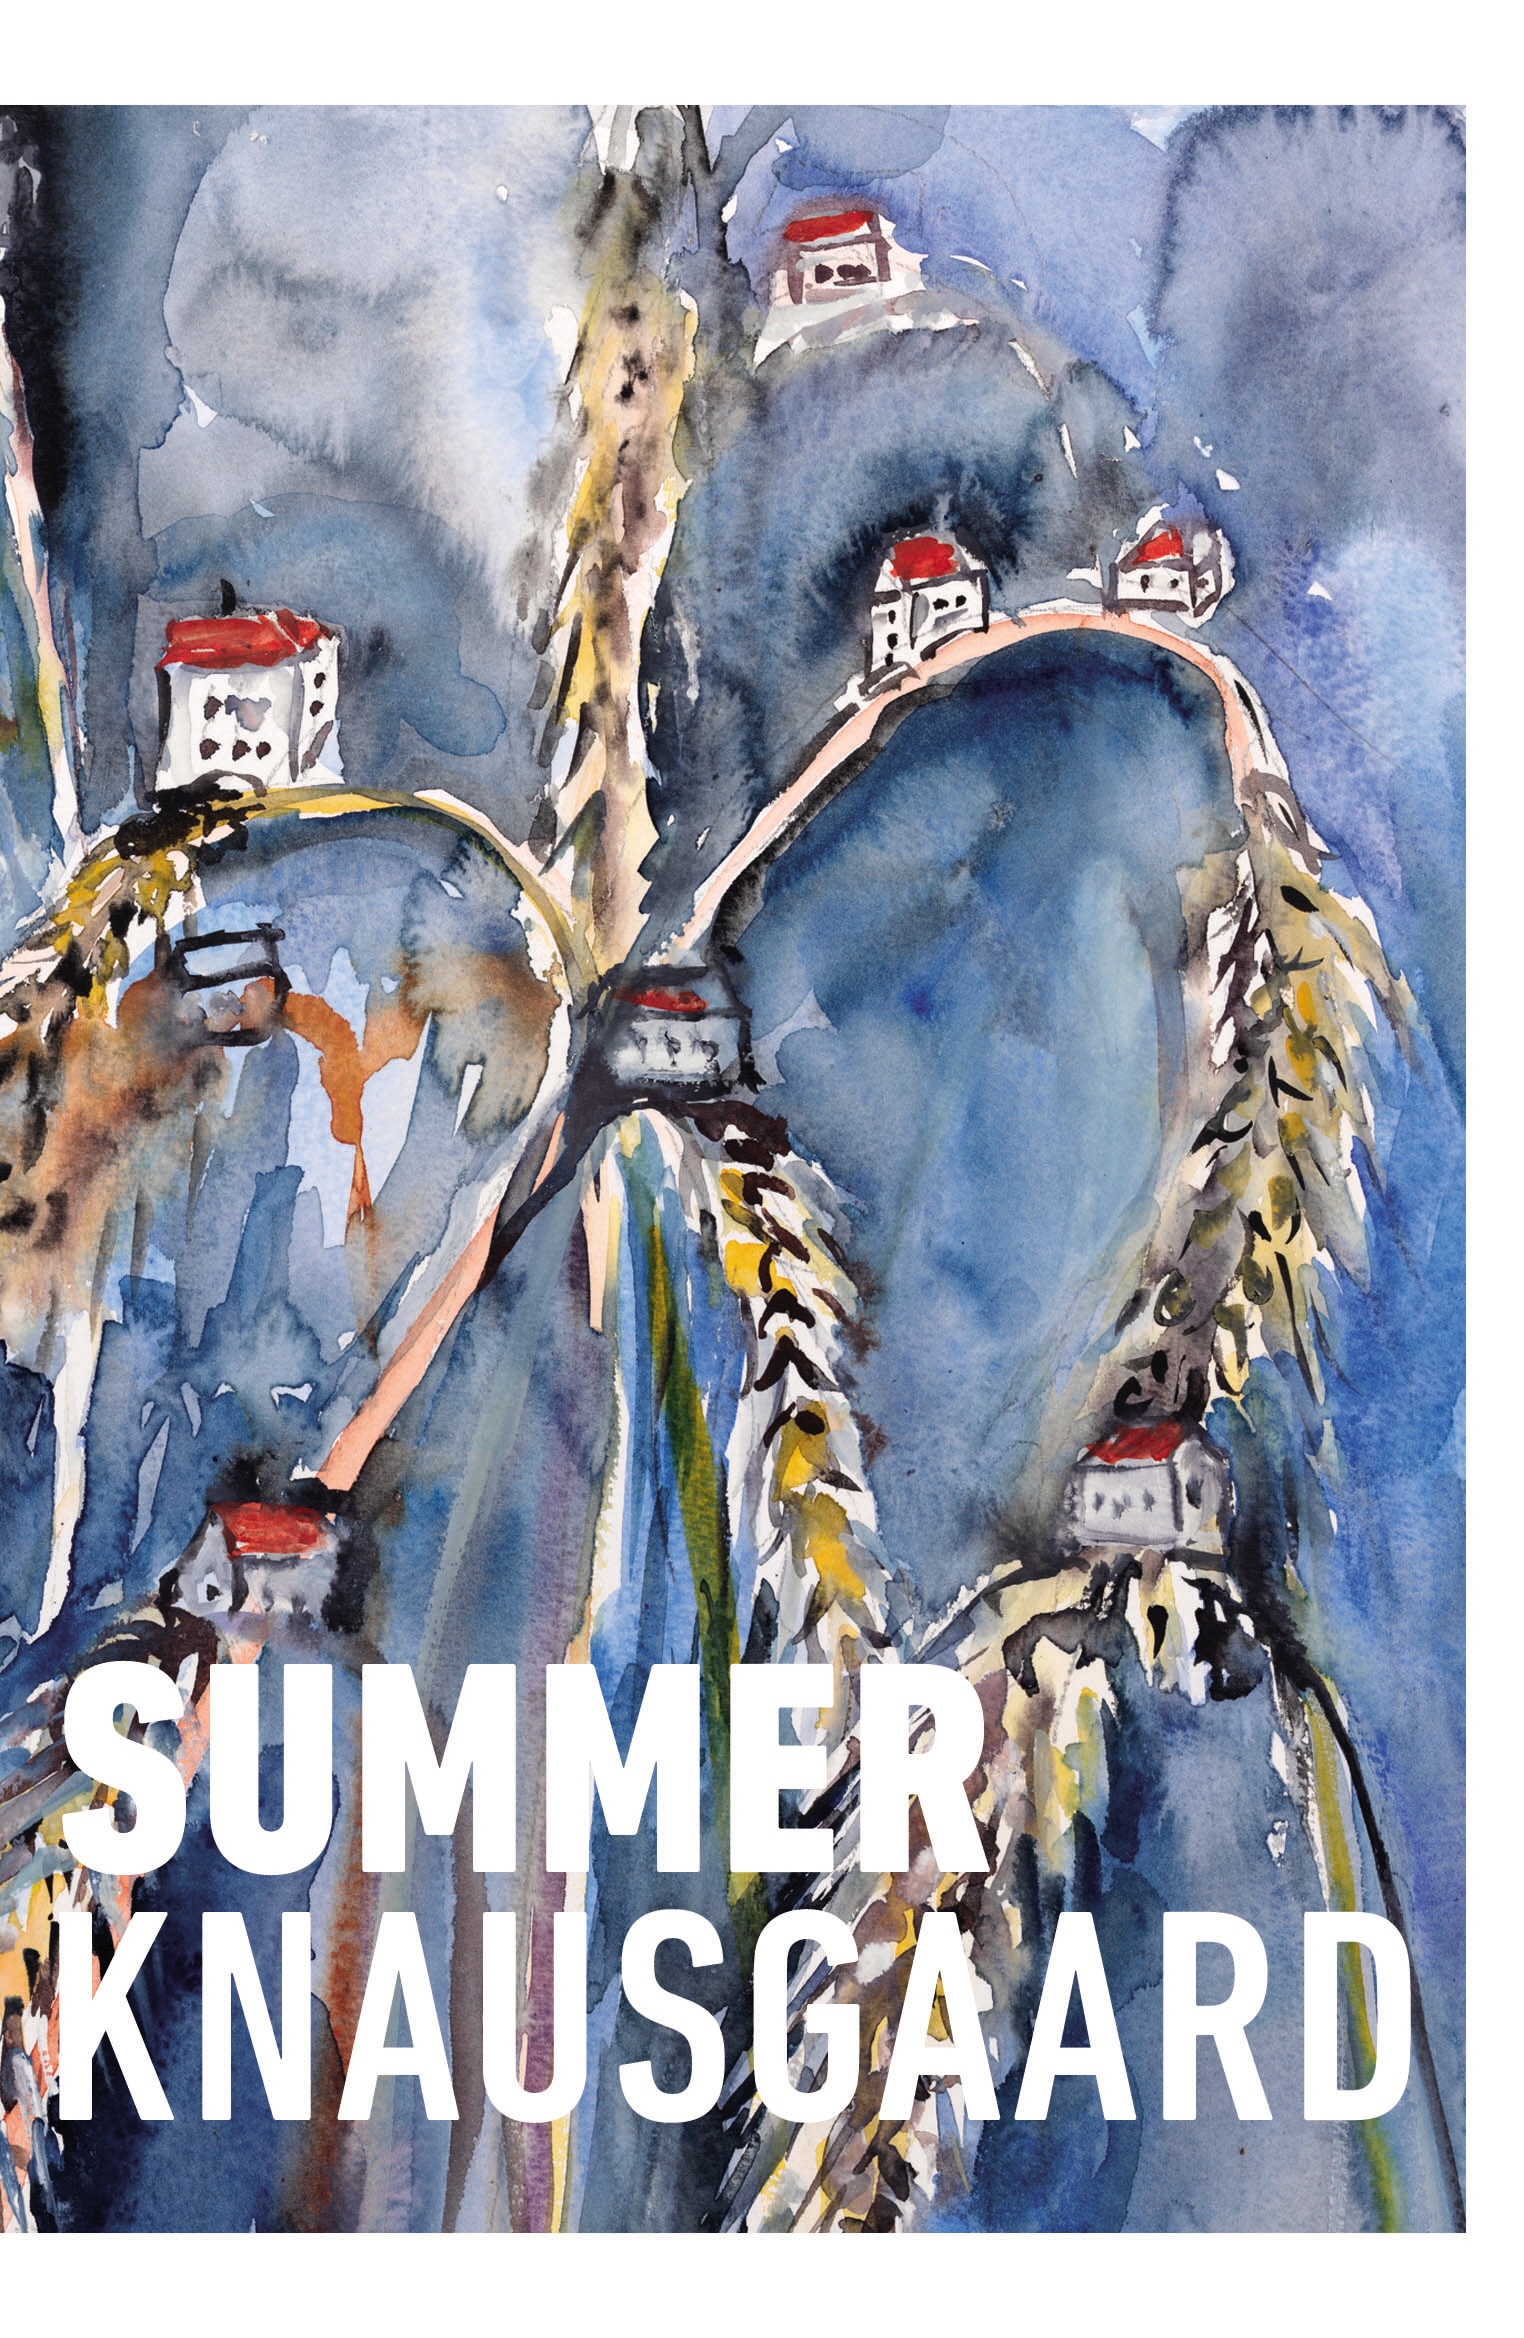 Book “Summer” by Karl Ove Knausgaard — March 3, 2022